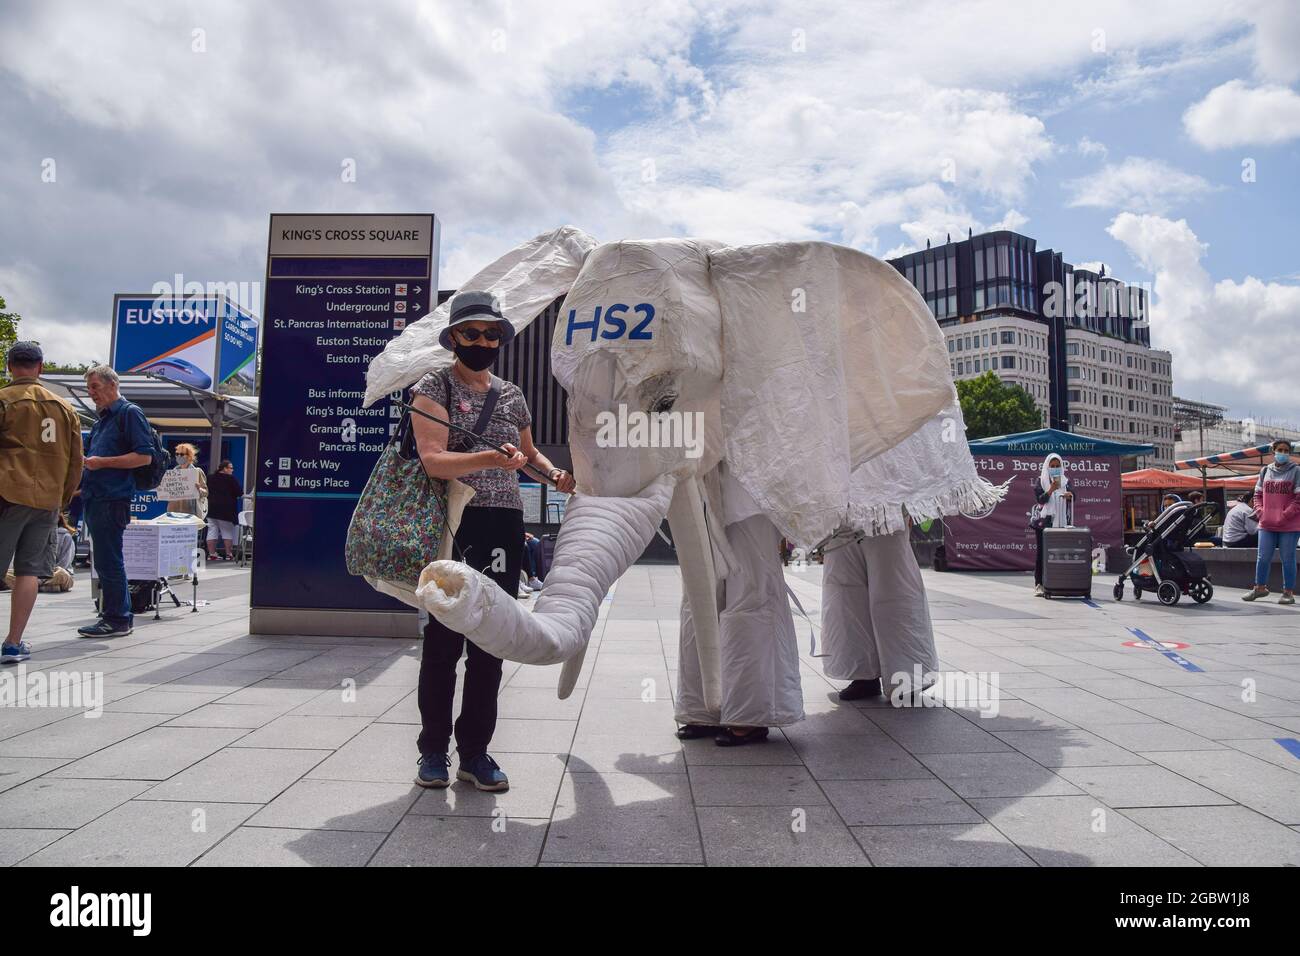 London, Großbritannien. August 2021. Demonstranten, die ein weißes Elefantenkostüm „HS2“ tragen, werden von einem Protestanten vor den Bahnhof geführt. Aktivisten versammelten sich vor dem Bahnhof King's Cross, um gegen das neue Hochgeschwindigkeits-2-Eisenbahnsystem (HS2) zu protestieren, das nach Meinung von Umweltschützern „ökologisch verheerend“ sein wird und den Steuerzahlern £170 Milliarden kosten wird. (Kredit: Vuk Valcic/Alamy Live News) Stockfoto